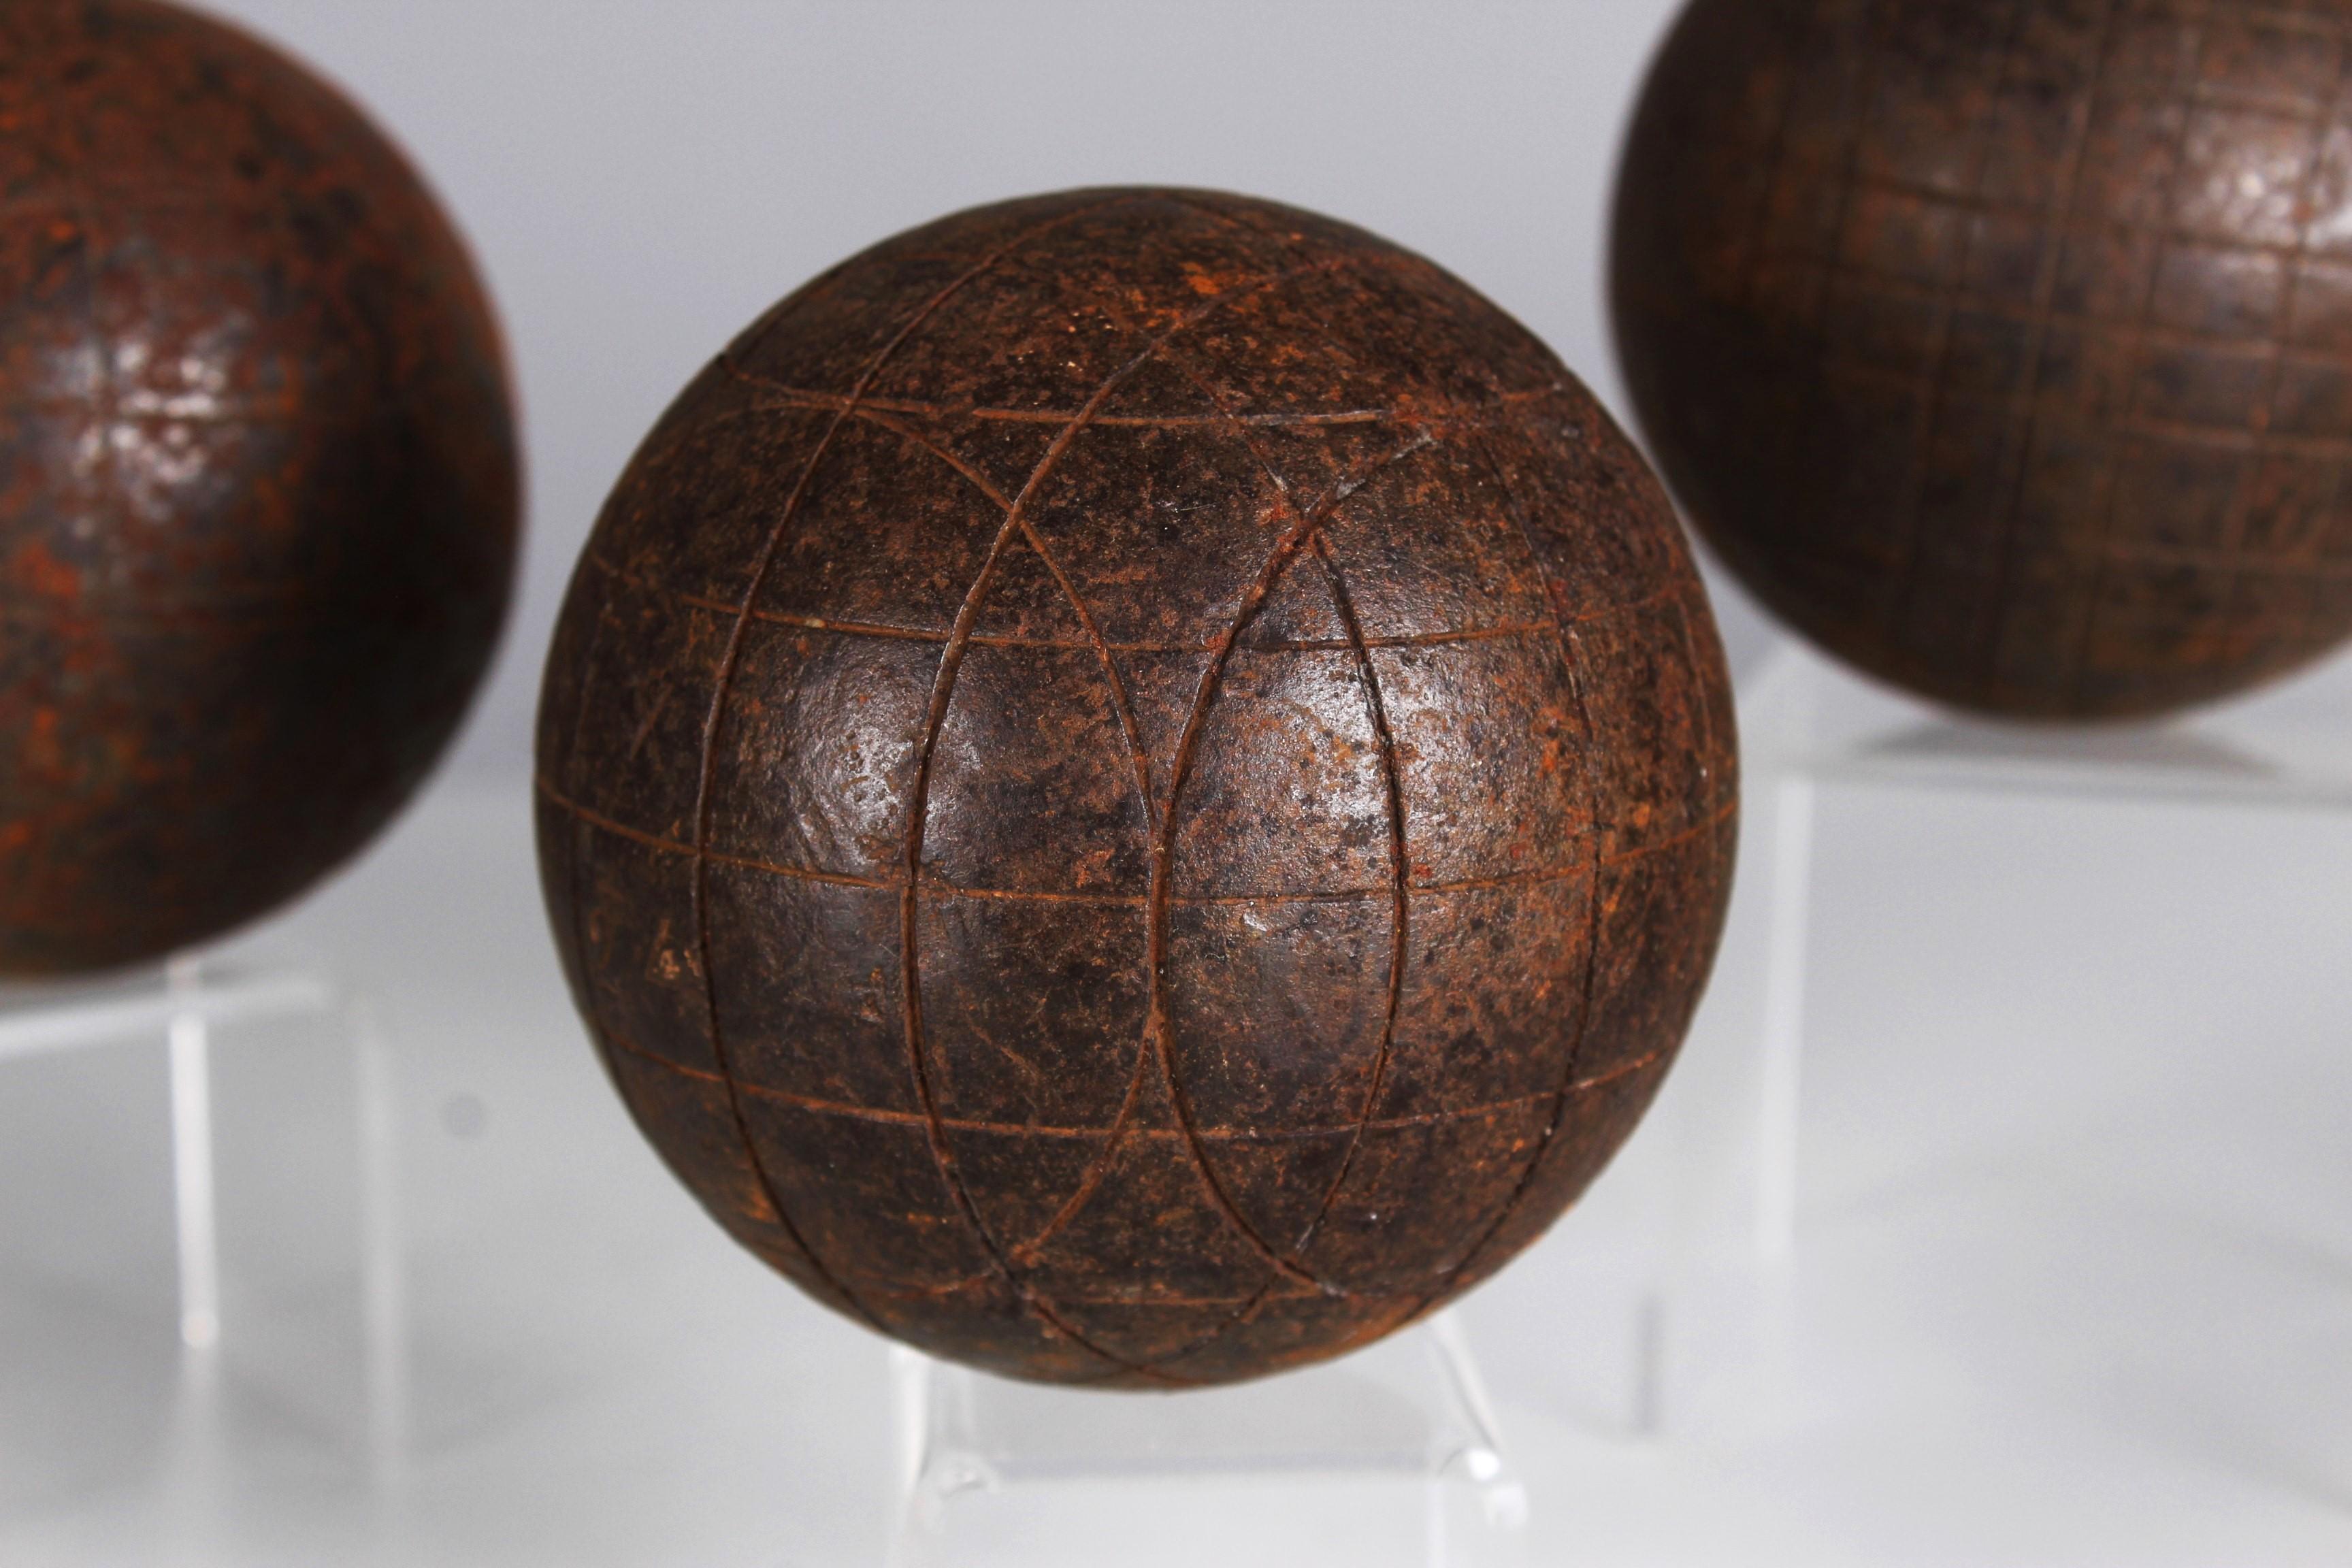 Magnifique et unique ensemble de trois boules Boule, France, fin du 19e siècle.

Au XIXe siècle, les boules de pétanque antiques en métal ont connu une renaissance qui a porté le jeu de boules à un niveau supérieur. 
Ces boules ornementées n'étaient